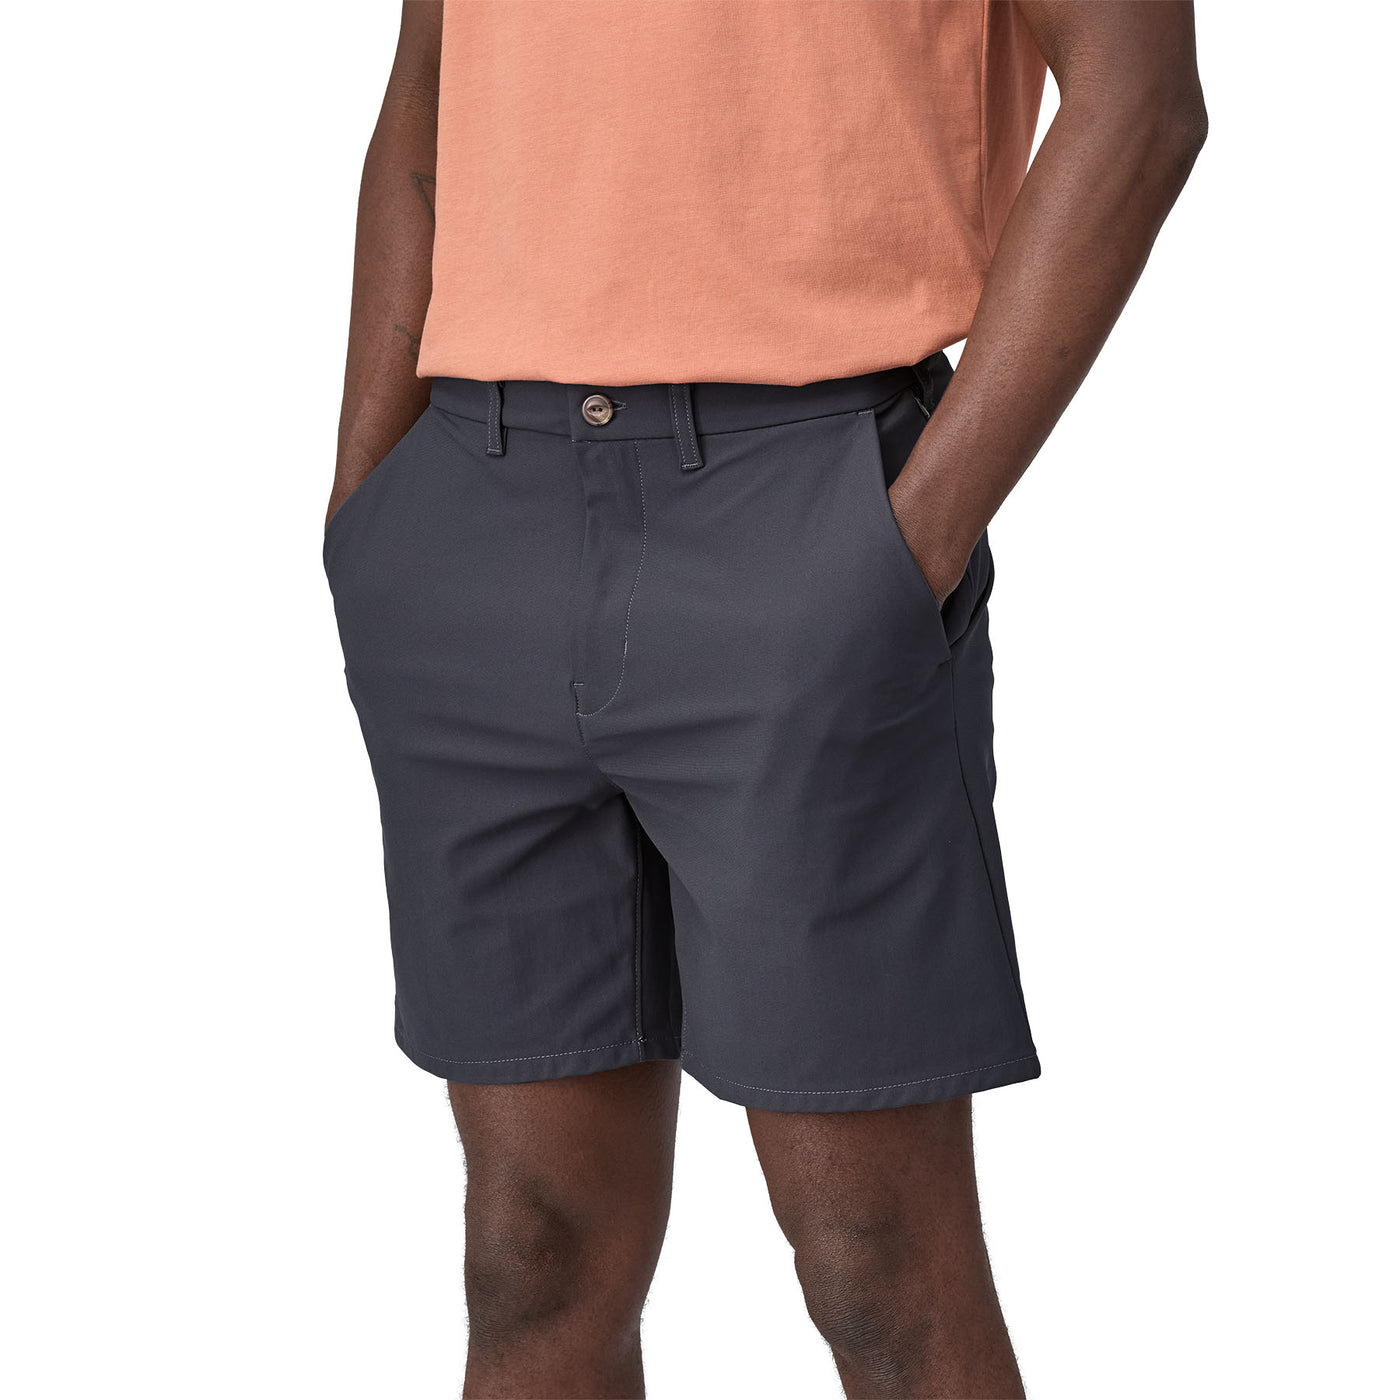 PATAGONIA Men's Transit Traveler Shorts - 7in